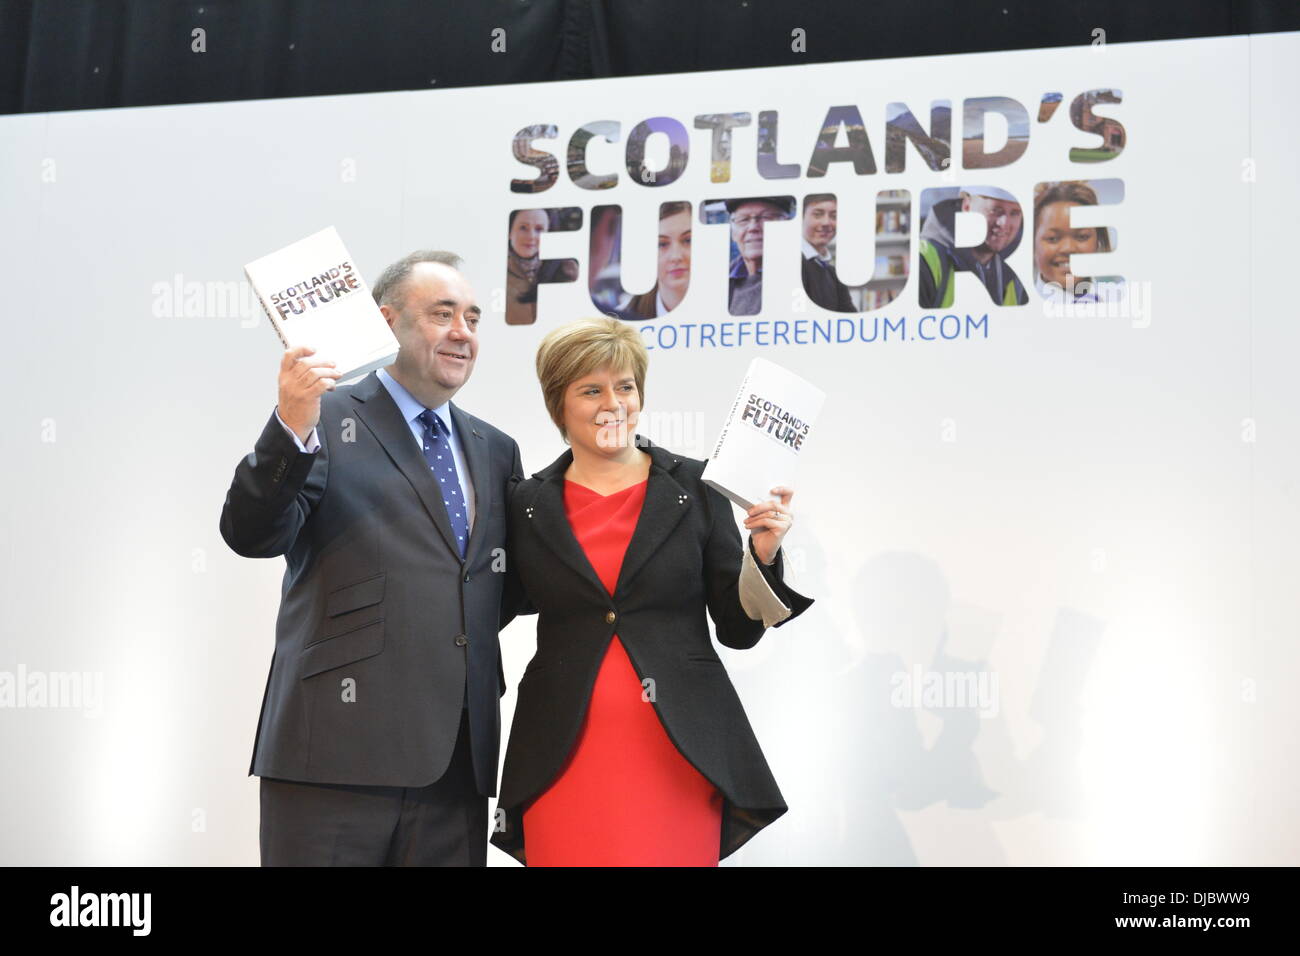 Glasgow, Écosse, GBR - 26 novembre : le premier ministre Alex Salmond et le chef du département du SNP Nicola Sturgeon ont lancé le Livre blanc du gouvernement écossais décrivant leurs projets d'indépendance le mardi 26 novembre 2013 à Glasgow, en Écosse. Un référendum pour décider si l'Écosse doit être un pays indépendant a lieu le 18 septembre 2014. (Photo © David Gordon) Banque D'Images